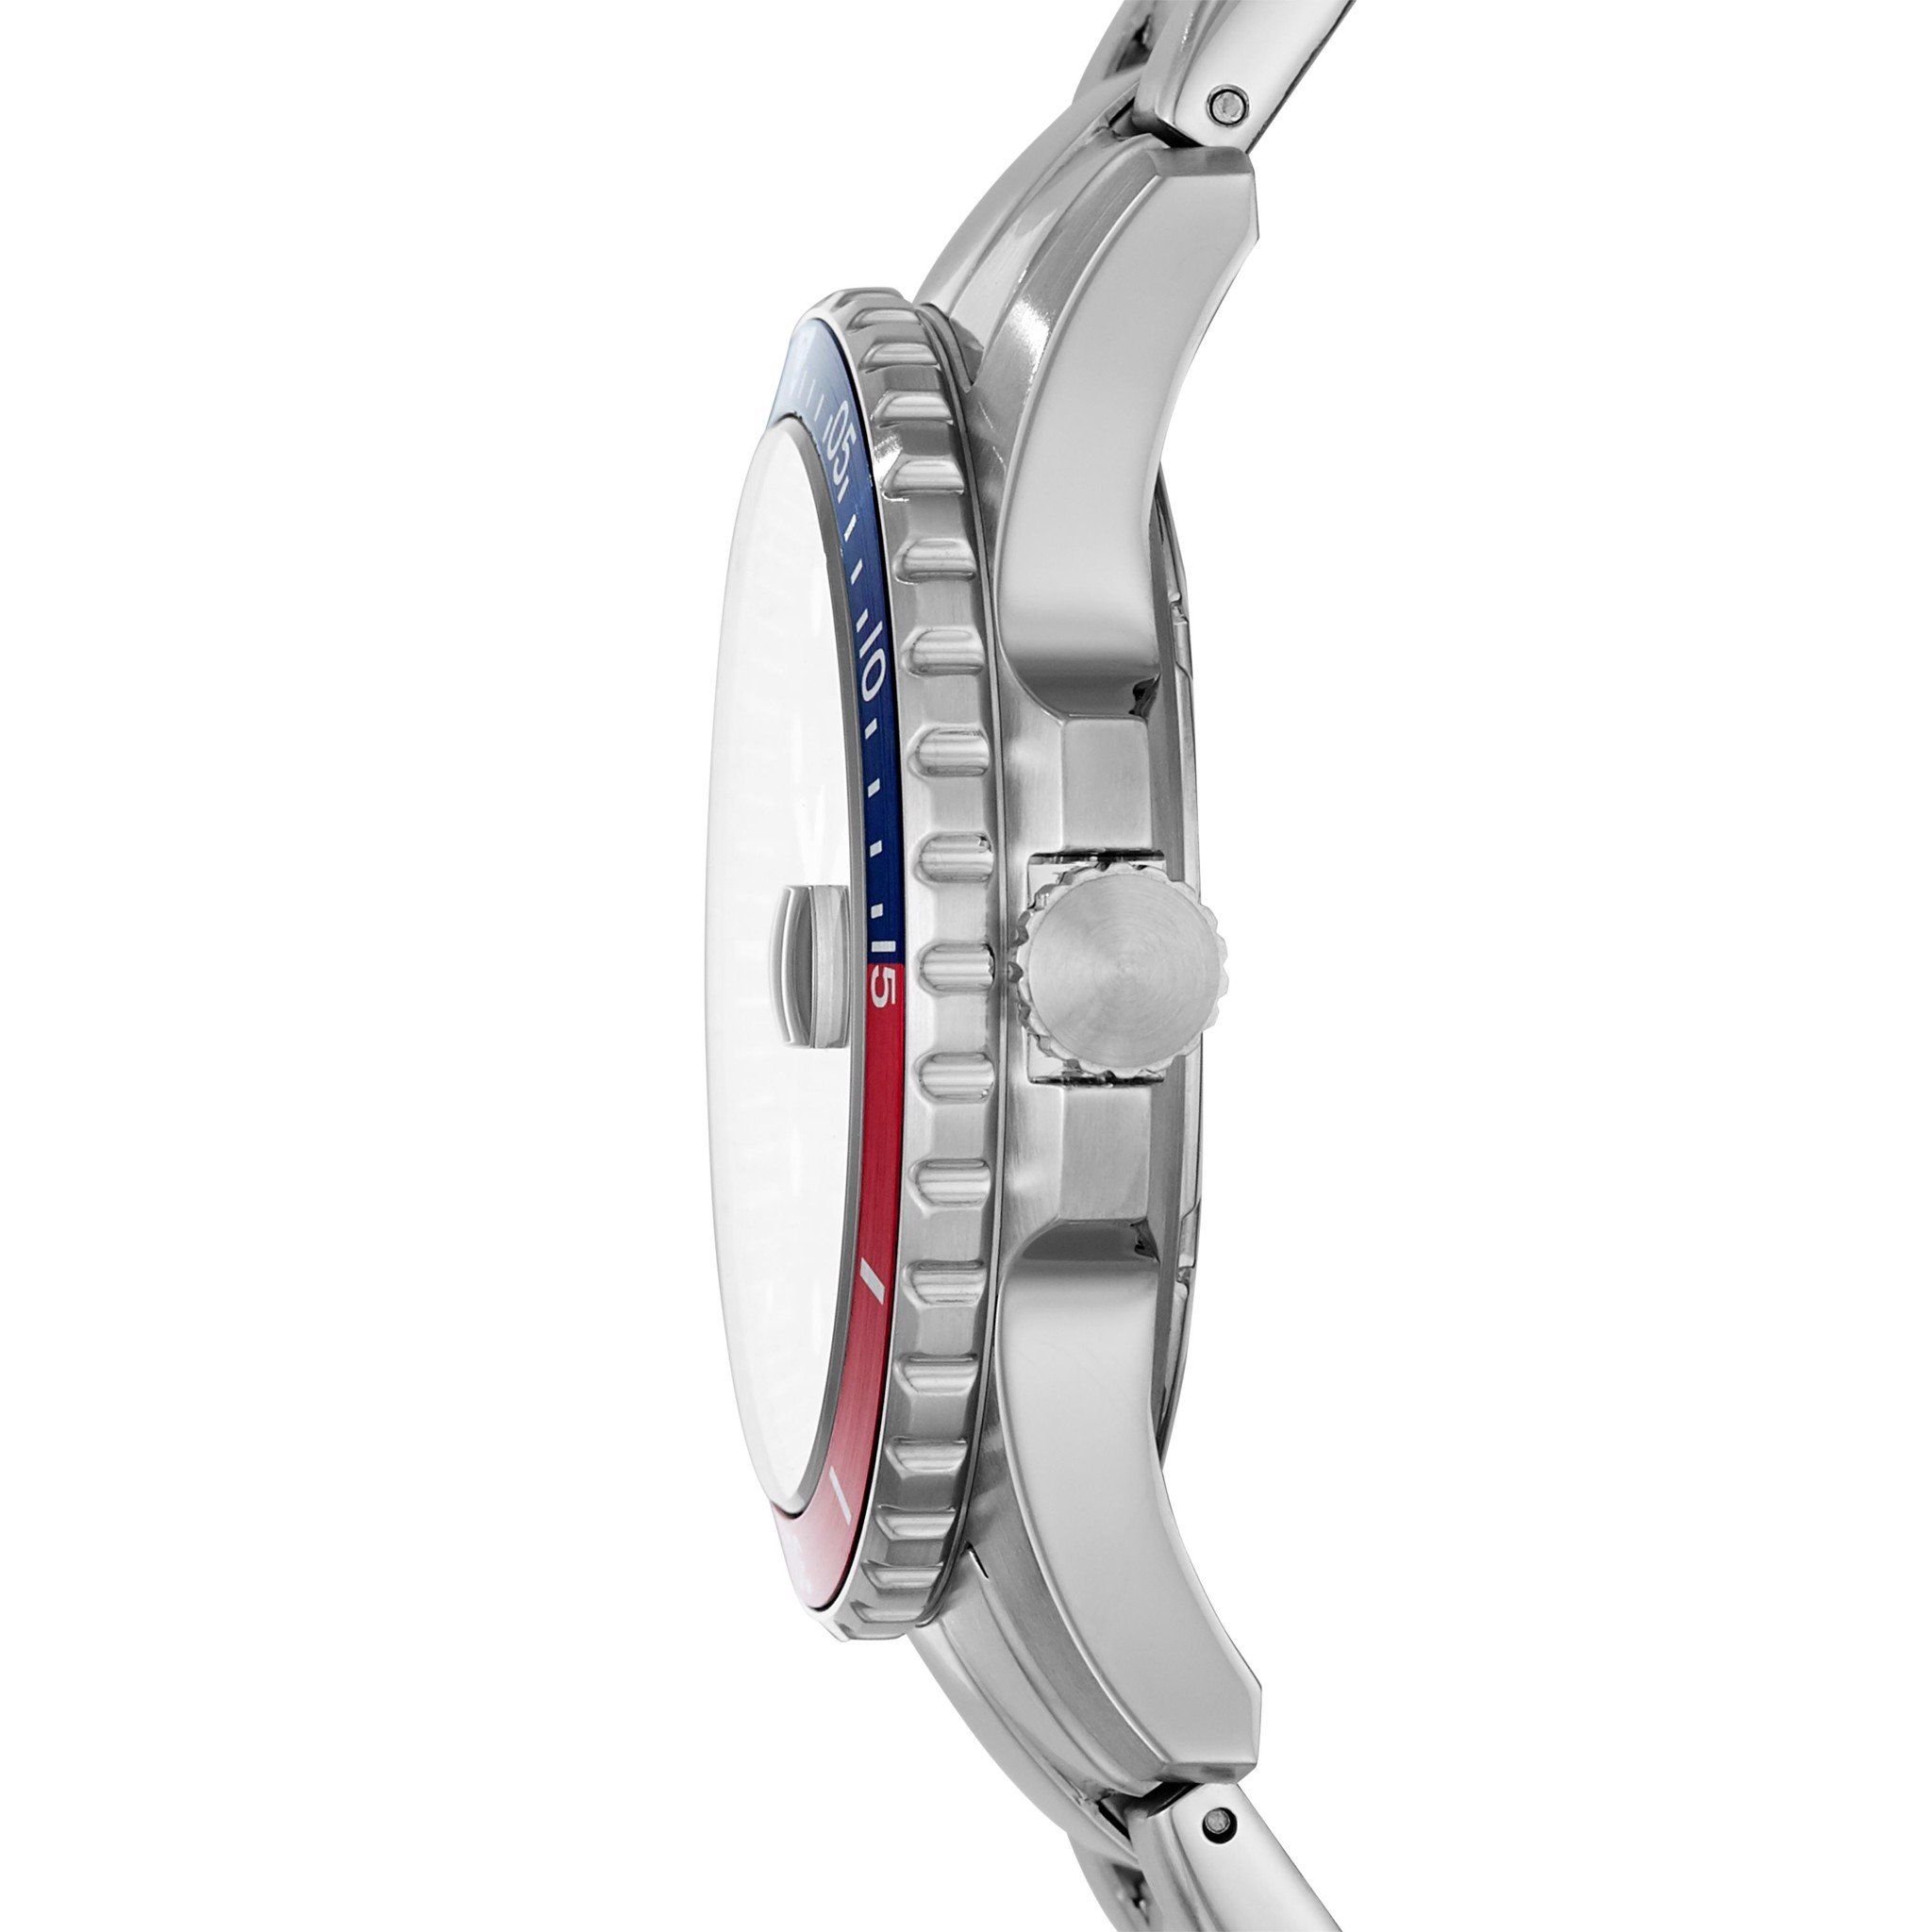  Đồng hồ nam Fossil FB - 01 dây kim loại FS5657 - màu bạc 